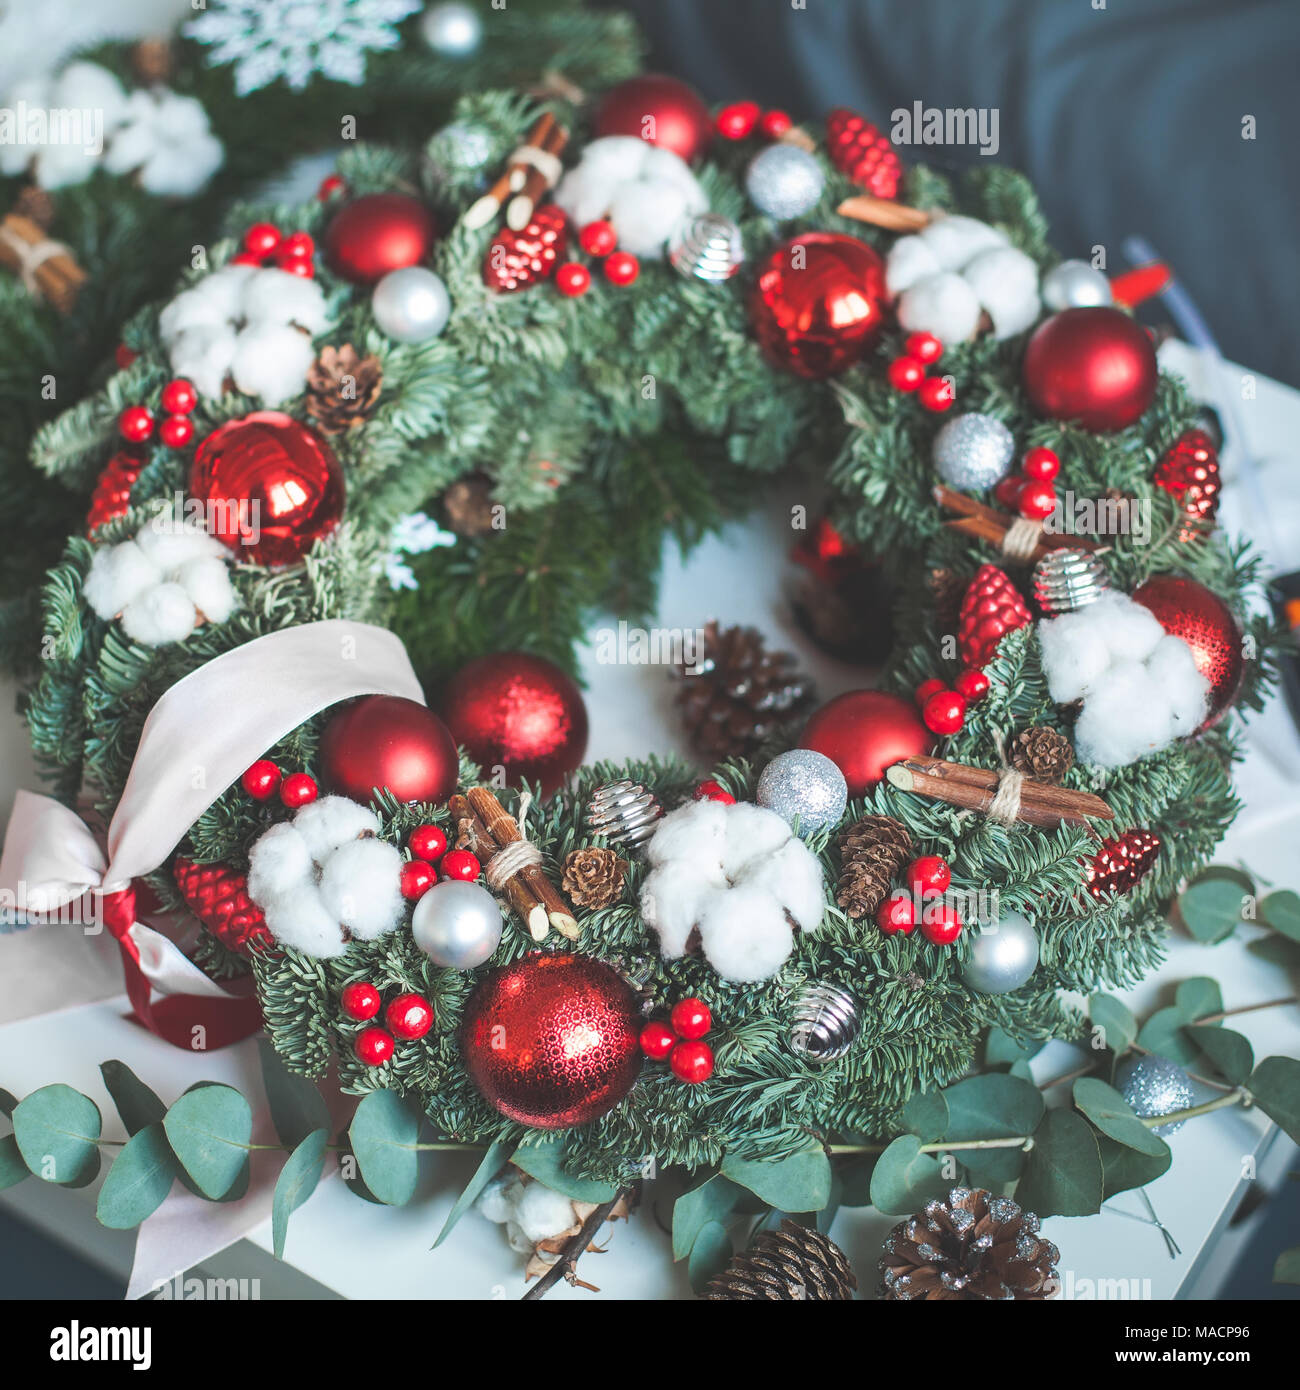 Couronne de Noël avec décoration de Noël, Arbre de Noël, des rameaux et des billes de verre rouge des baies de houx Banque D'Images